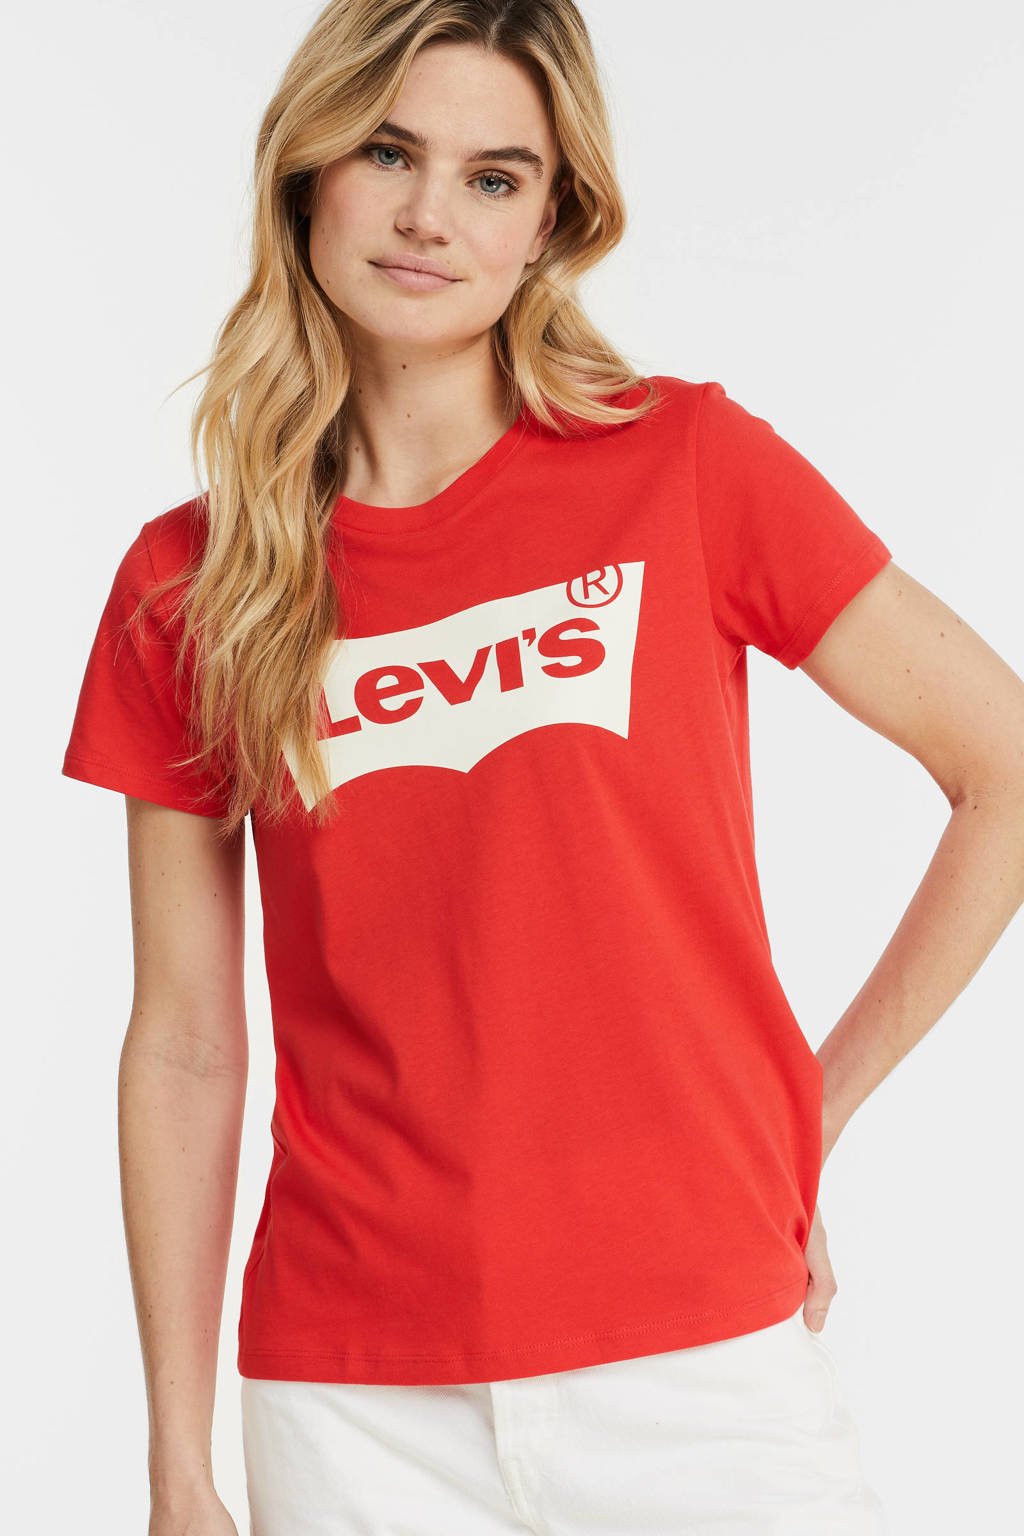 Hertog verdund Inactief Levi's T-shirt met logo rood/wit | wehkamp